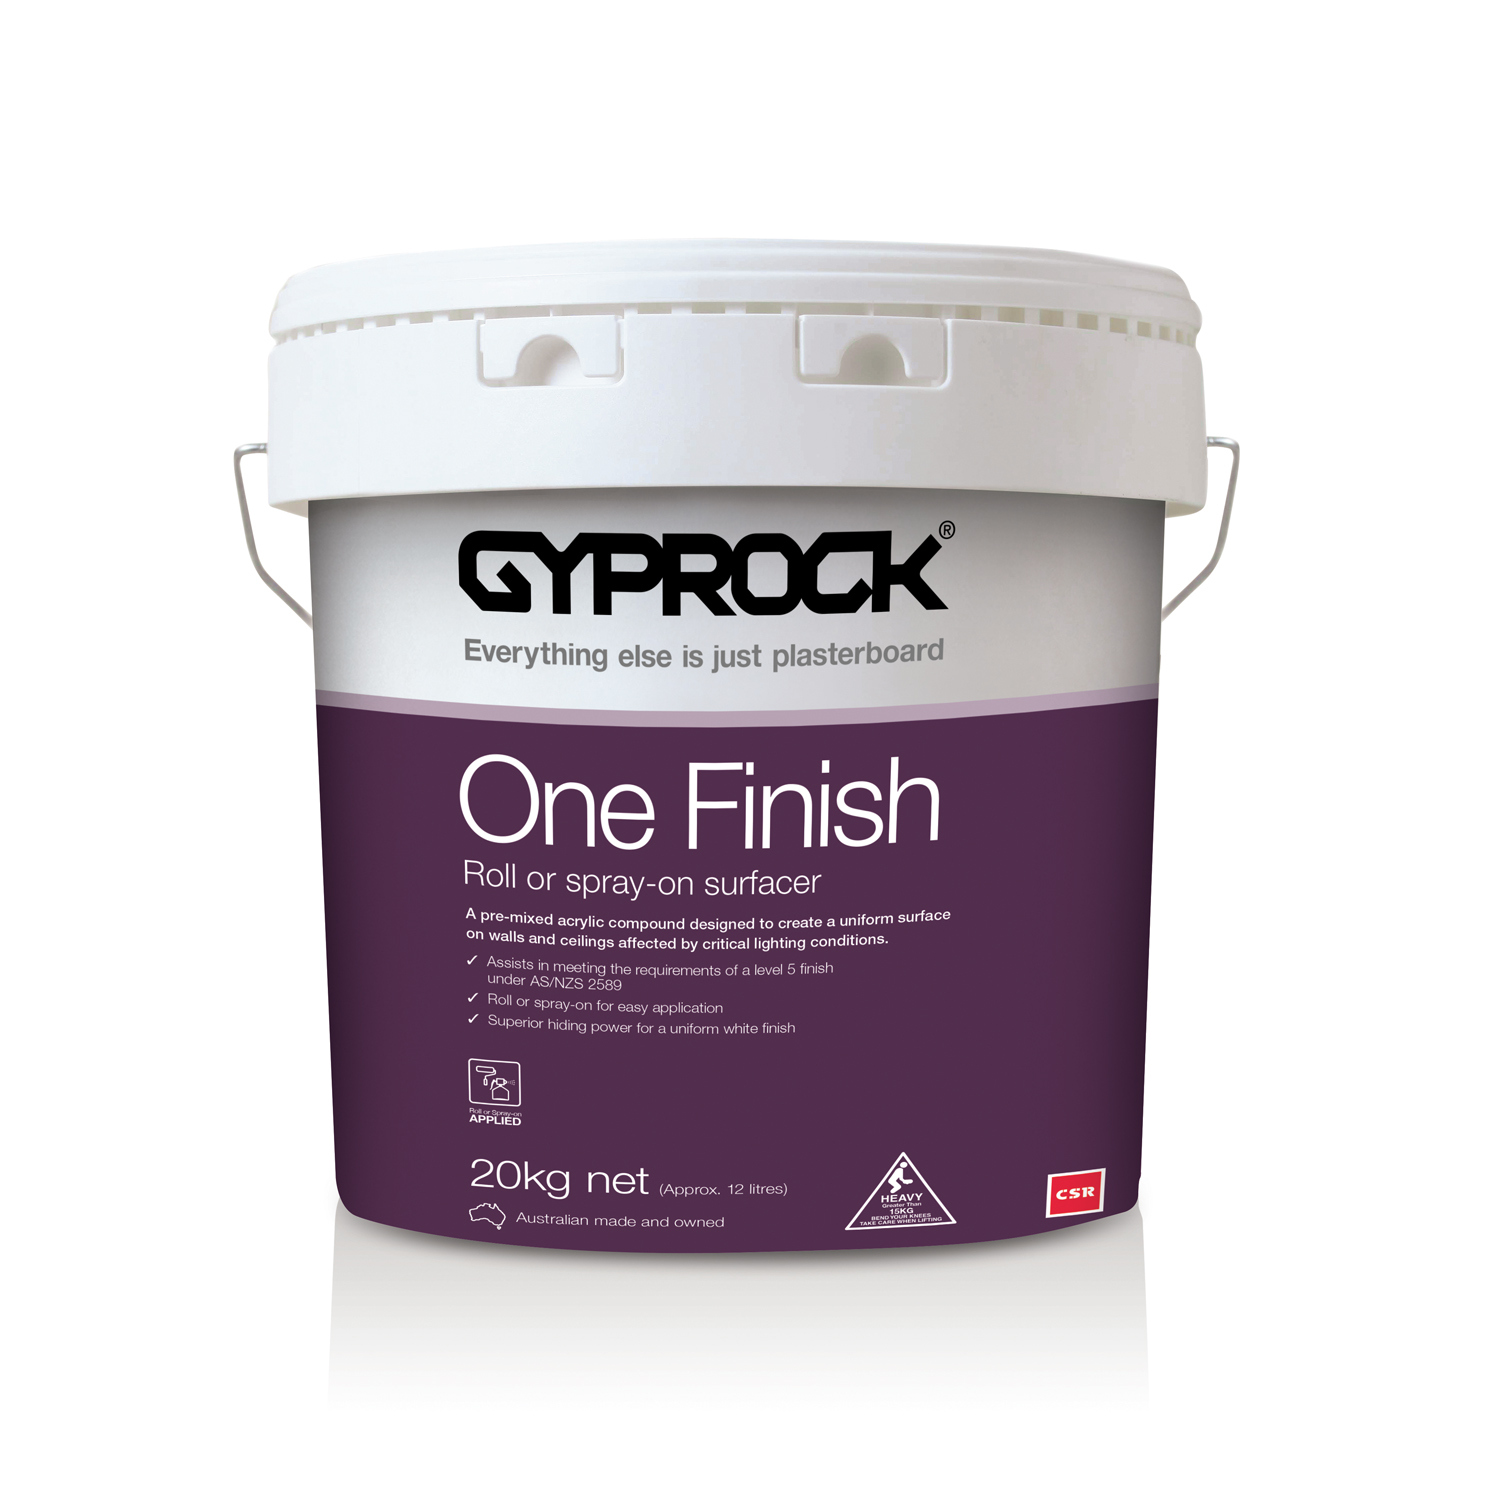 Gyprock One Finish product.